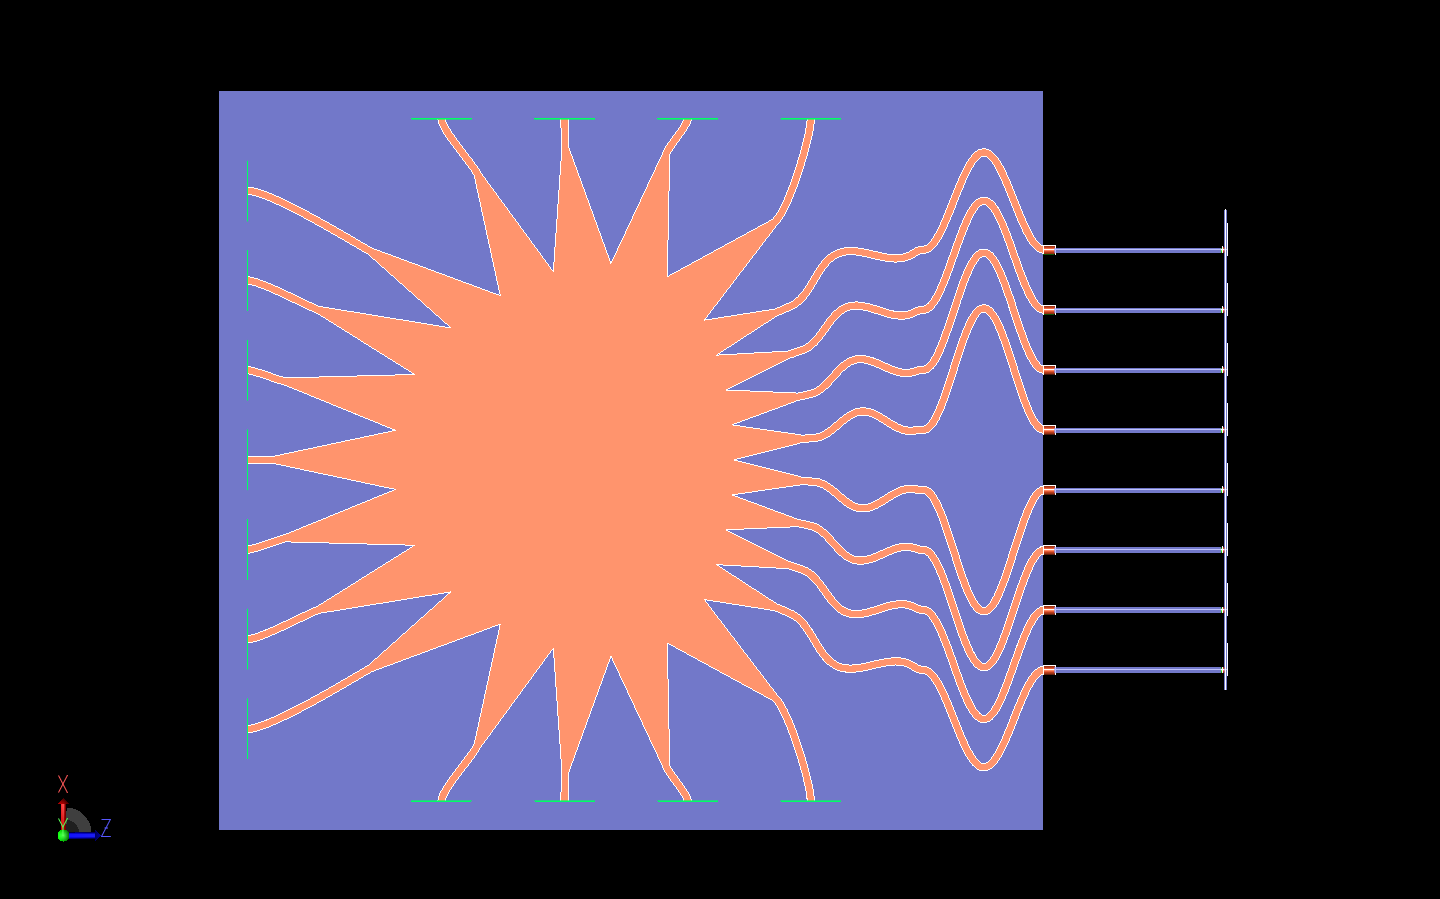 図16：システム全体の上面図。ロットマンレンズとアレイの伝送ラインがよりはっきりと見える。